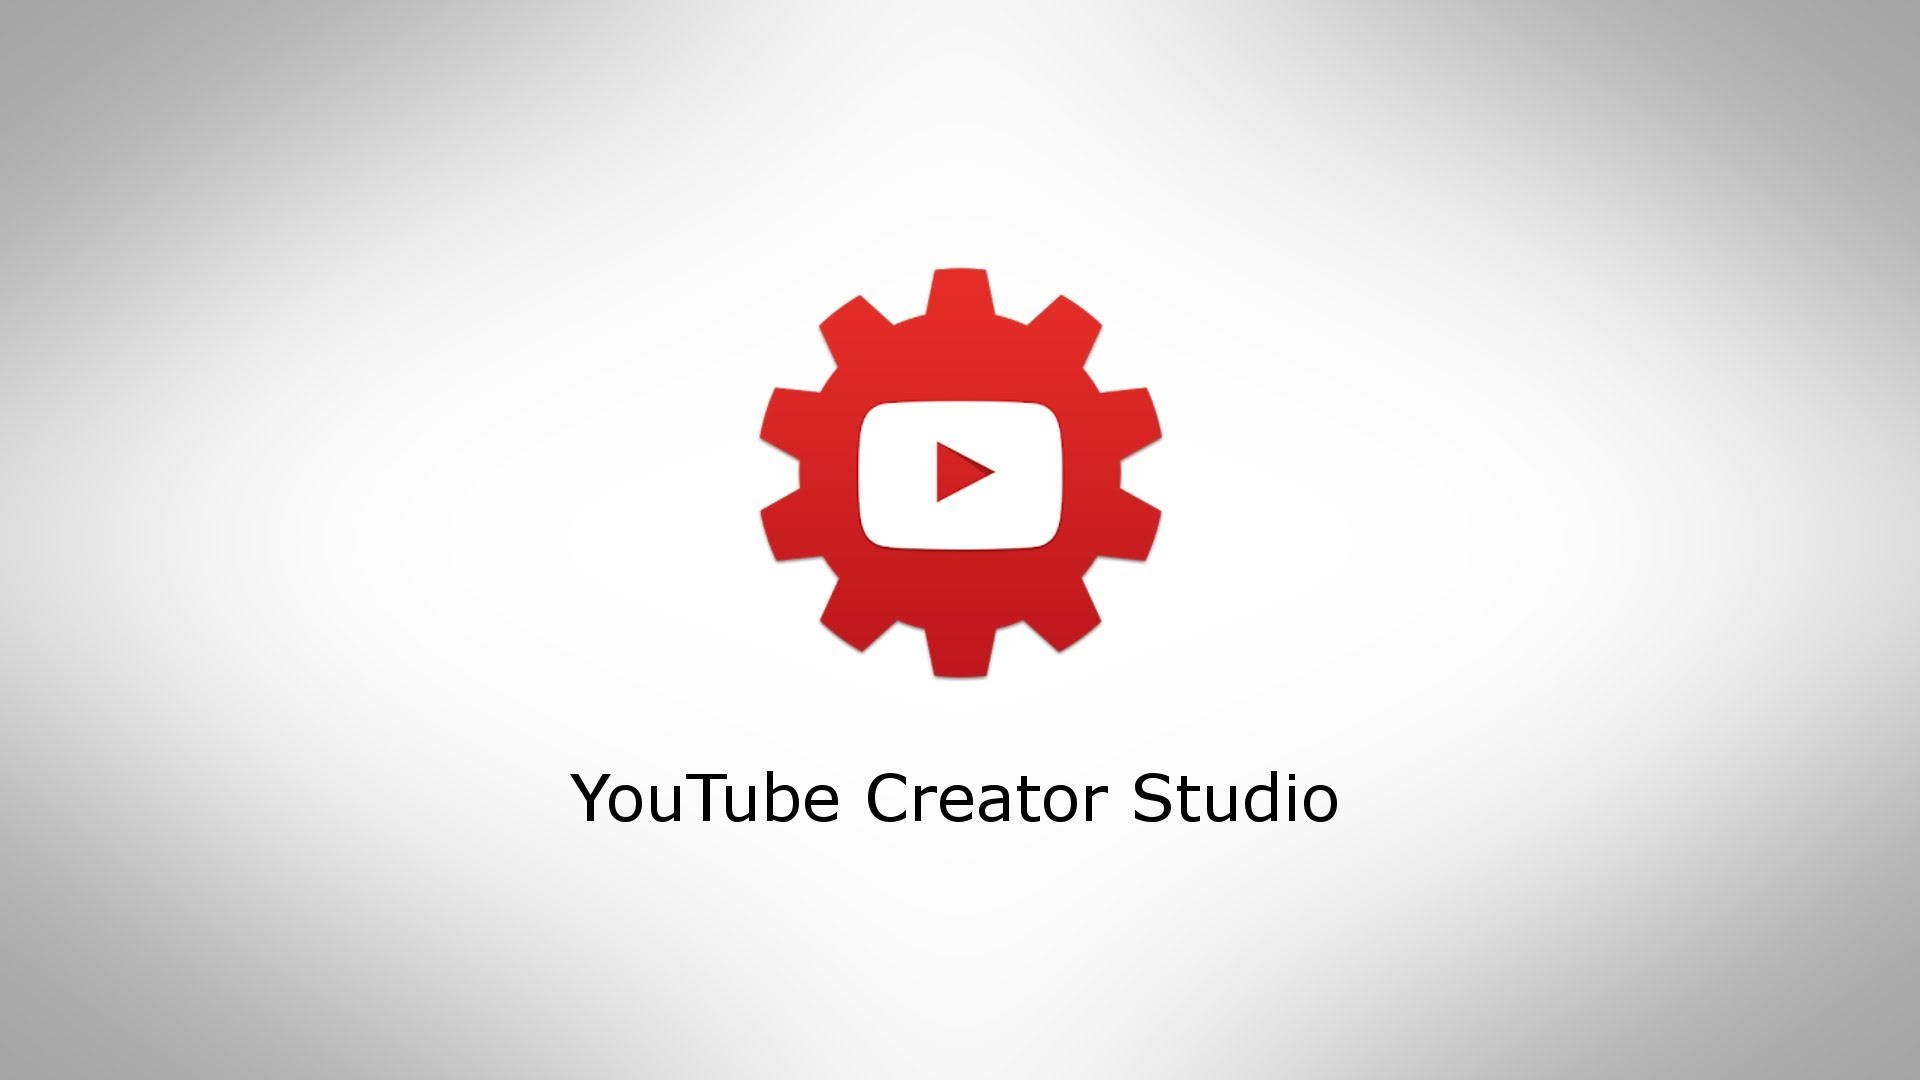 Творческая ютуб зайти. Youtube Studio. Ютуб студия. Youtube creator Studio. Творческая студия ютуб.